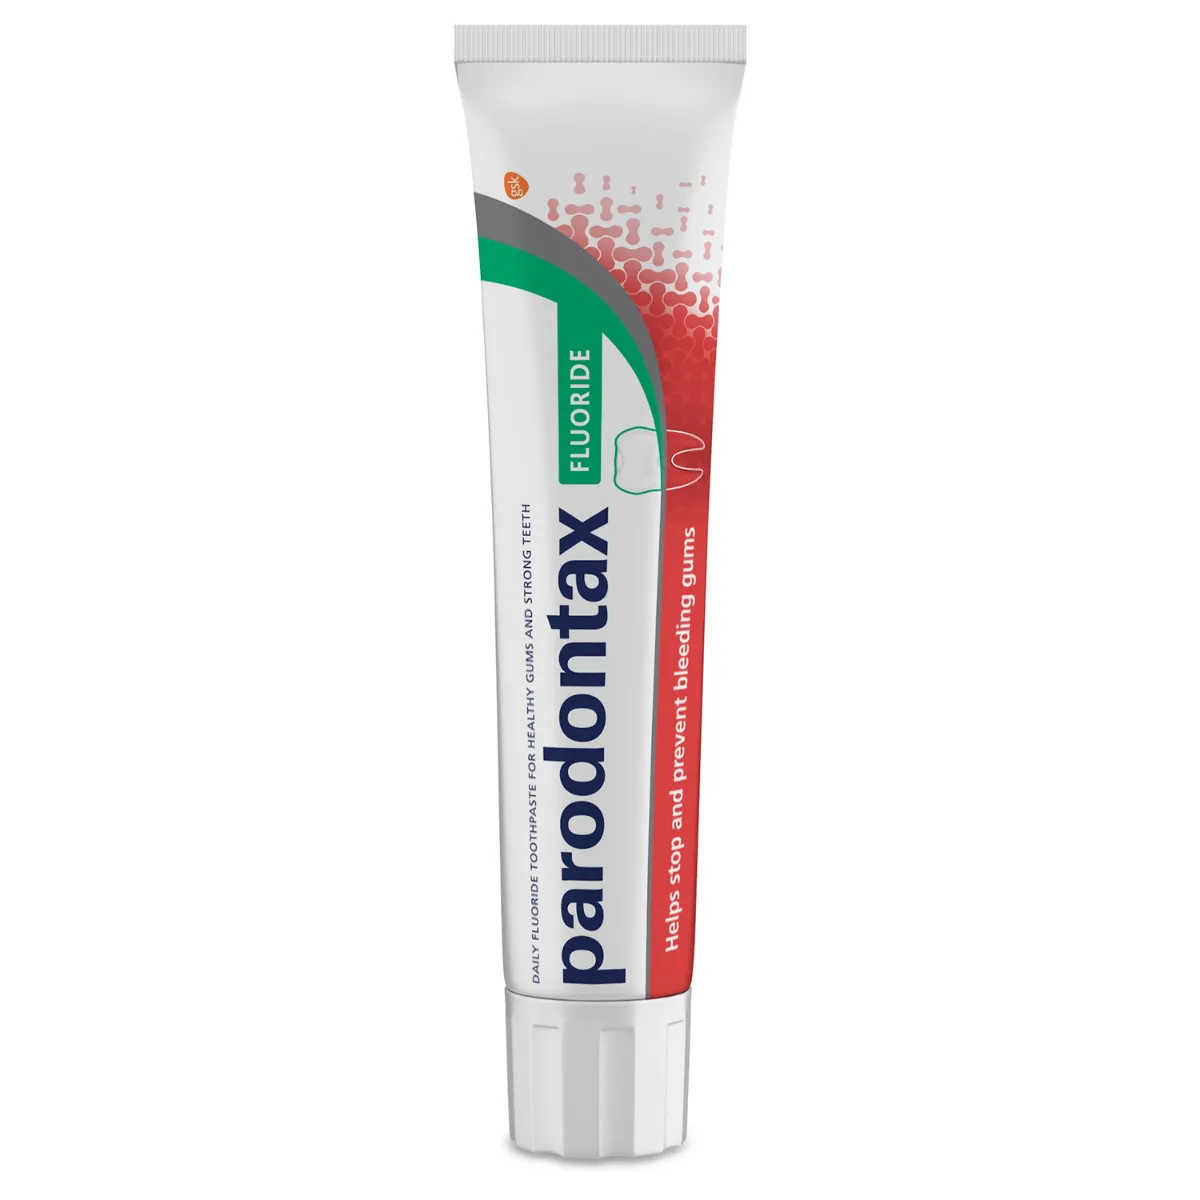 Parodontax Fluorid, pasta do zębów, 75ml